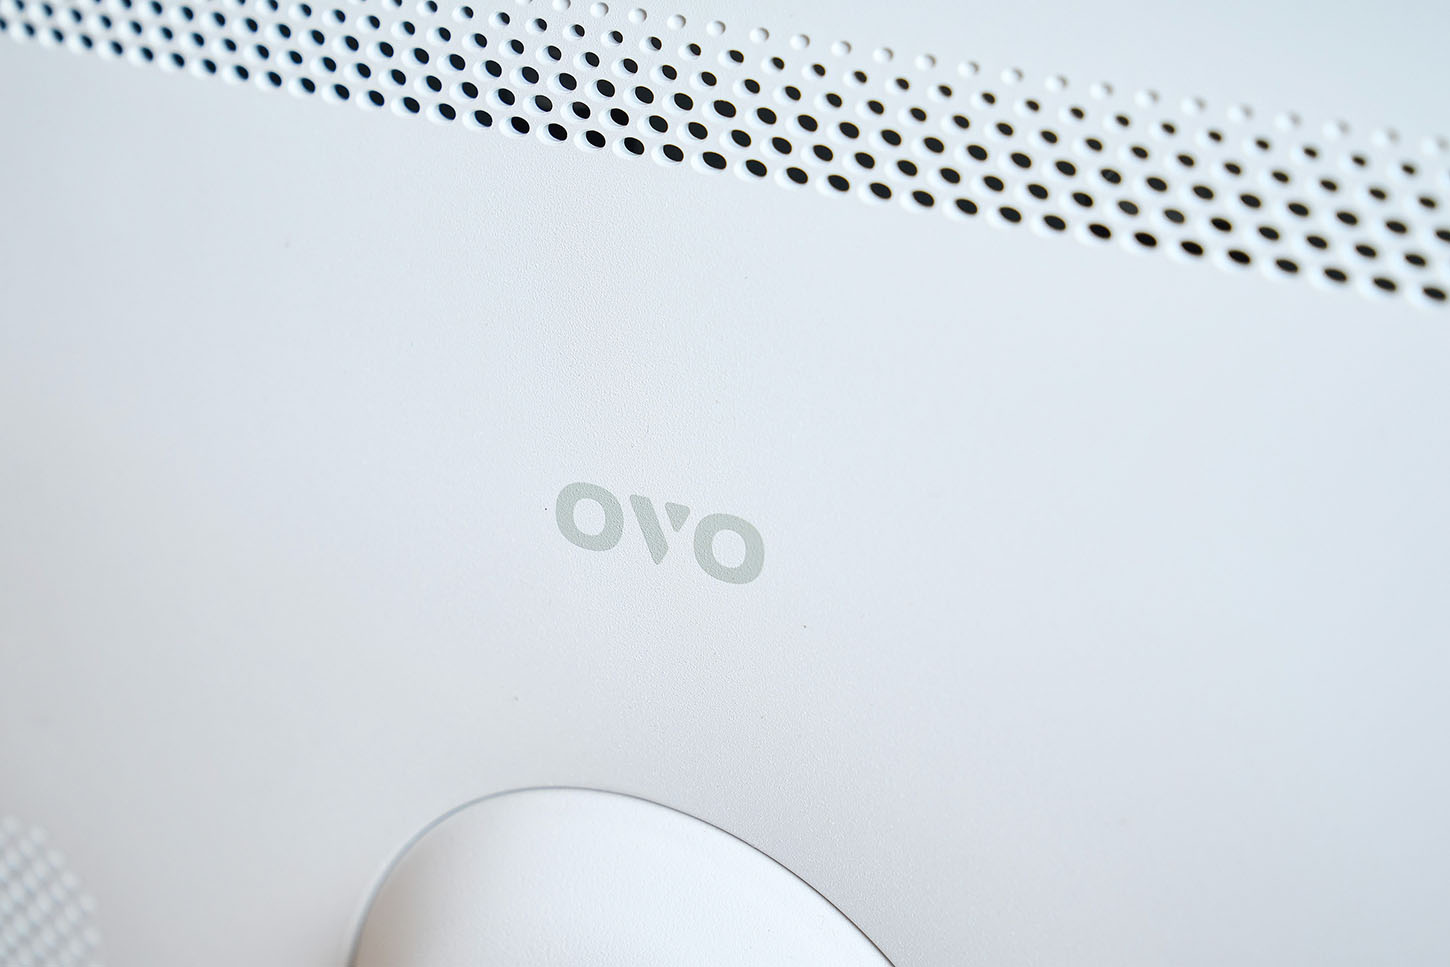 機背中央小小的 OVO 商標，則畫龍點睛達到不搶戲但顯眼的表現，更加添閨蜜機整體設計的精緻感。